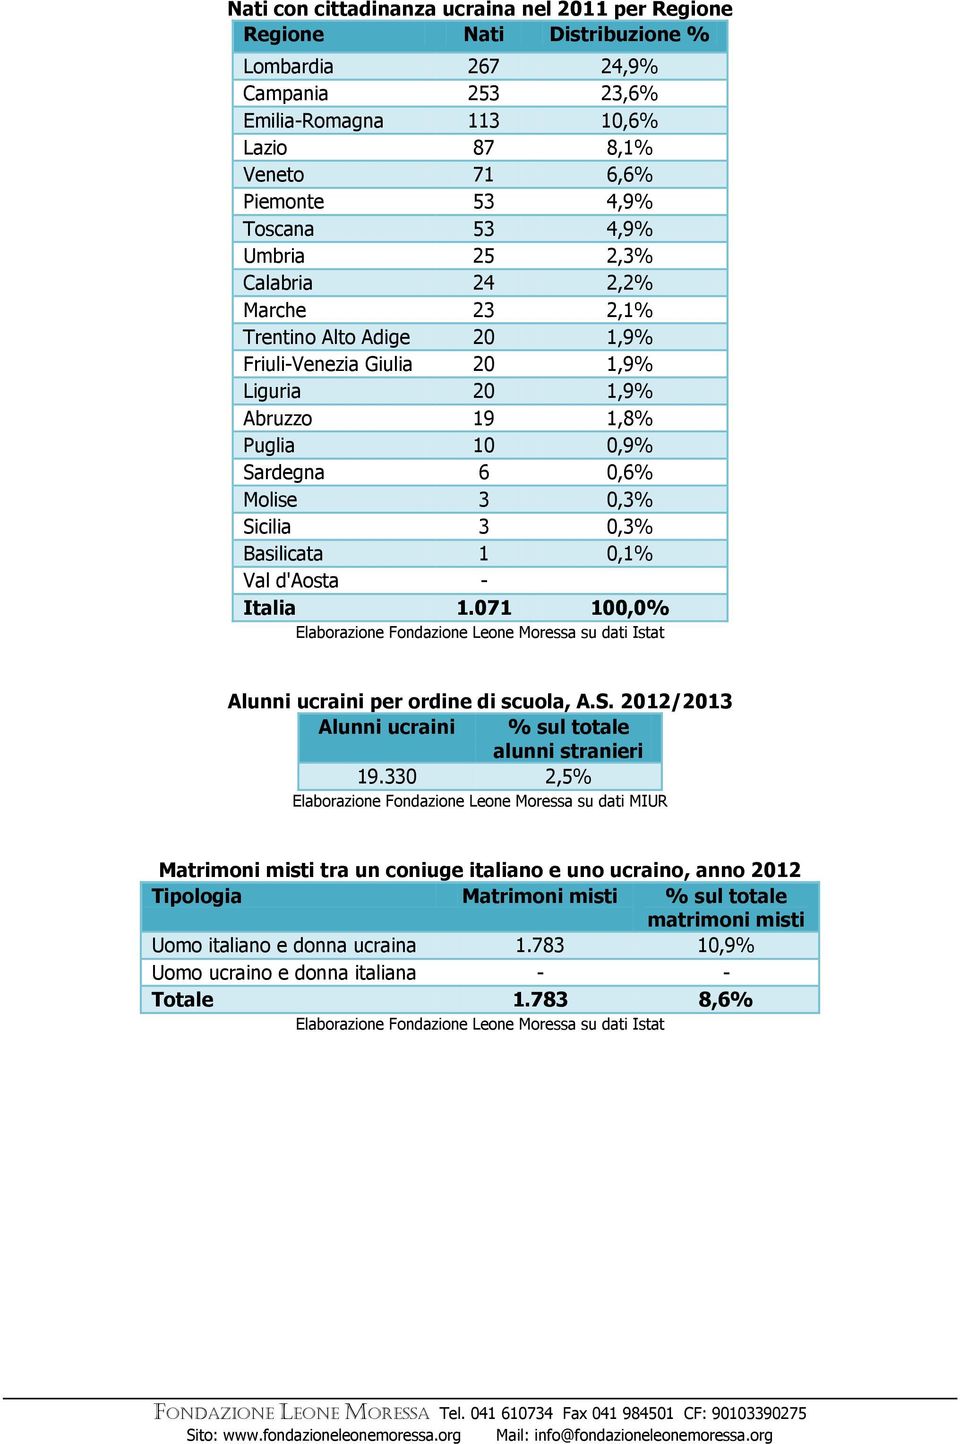 0,3% Basilicata 1 0,1% Val d'aosta - Italia 1.071 100,0% Alunni per ordine di scuola, A.S. 2012/2013 Alunni % sul totale alunni stranieri 19.